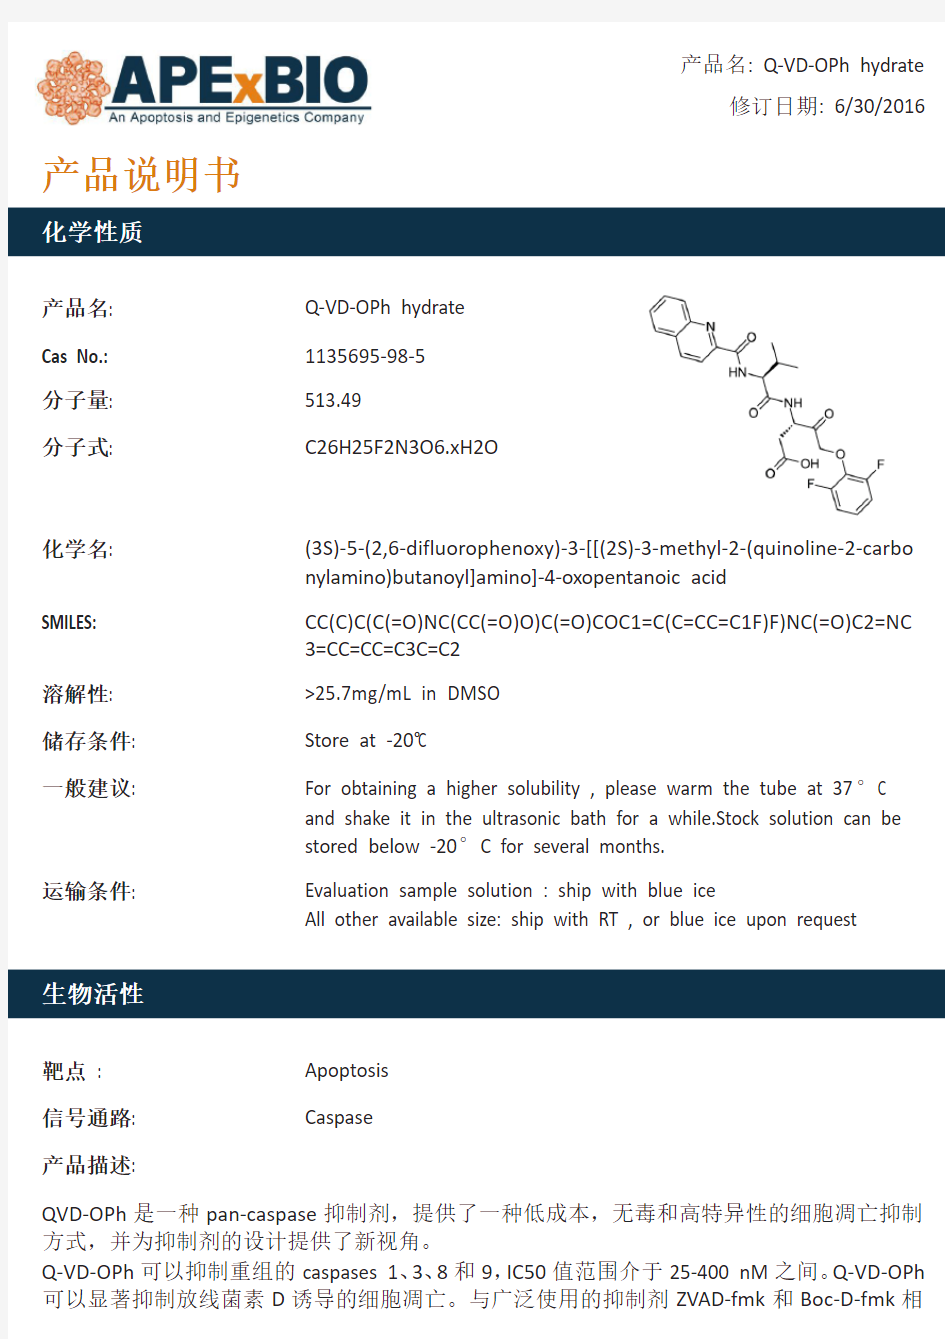 Q-VD-OPh hydrate_Pan-caspase抑制剂。_1135695-98-5_Apexbio